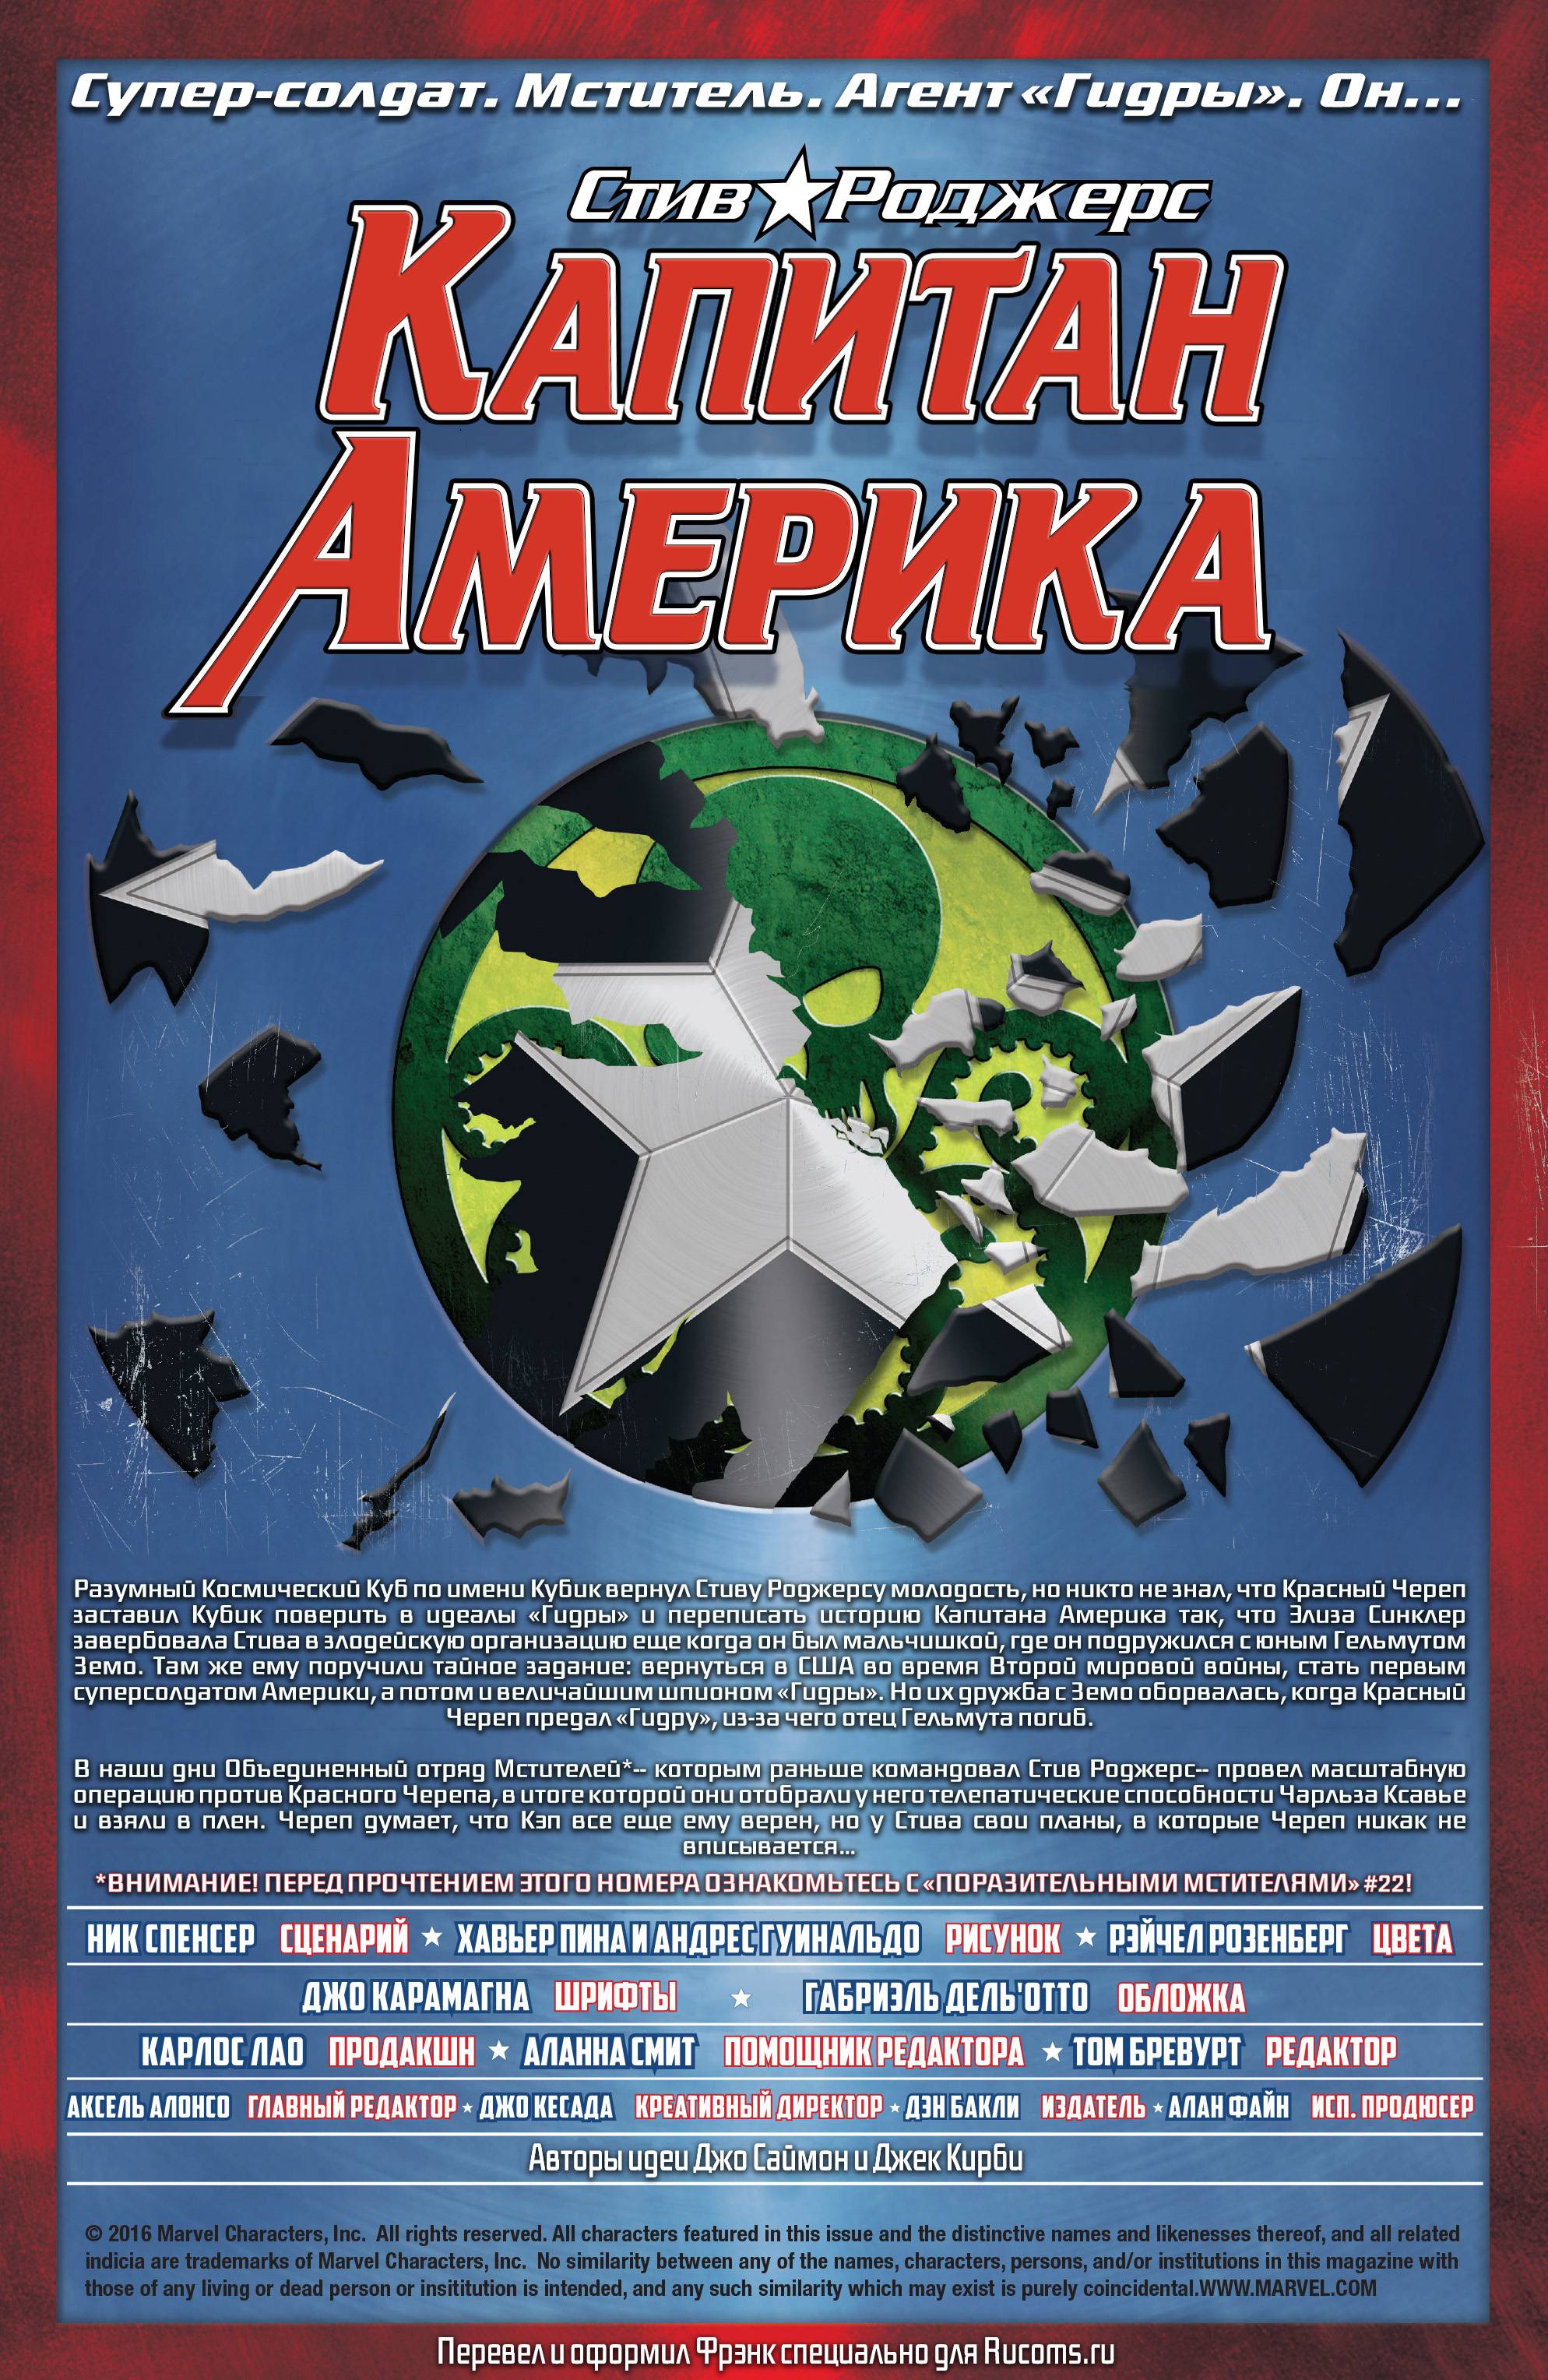 Капитан Америка: Стив Роджерс №15 онлайн